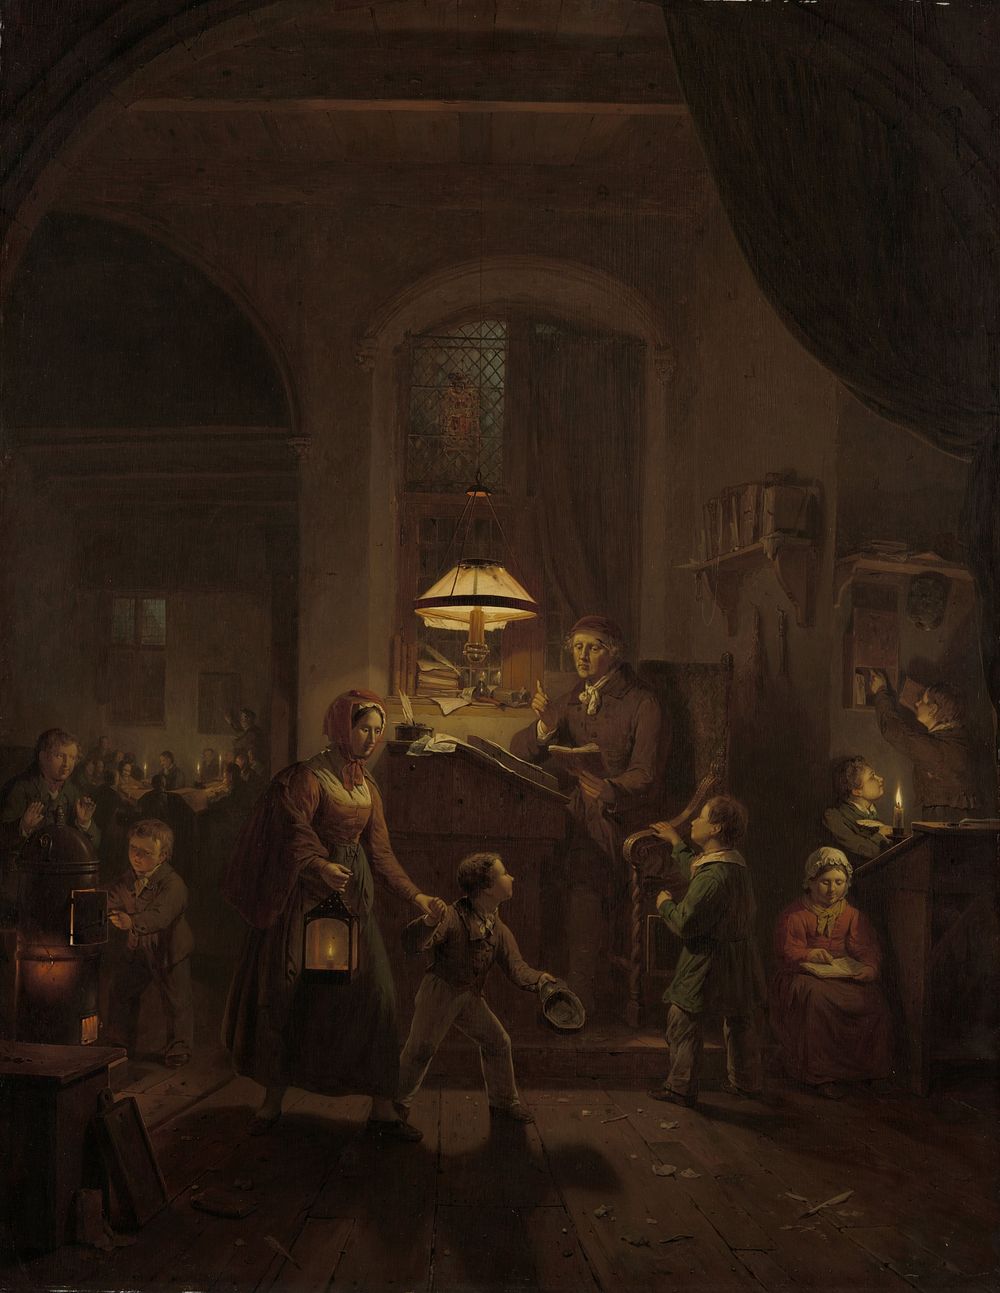 The Night School (1835) by George Gillis Haanen